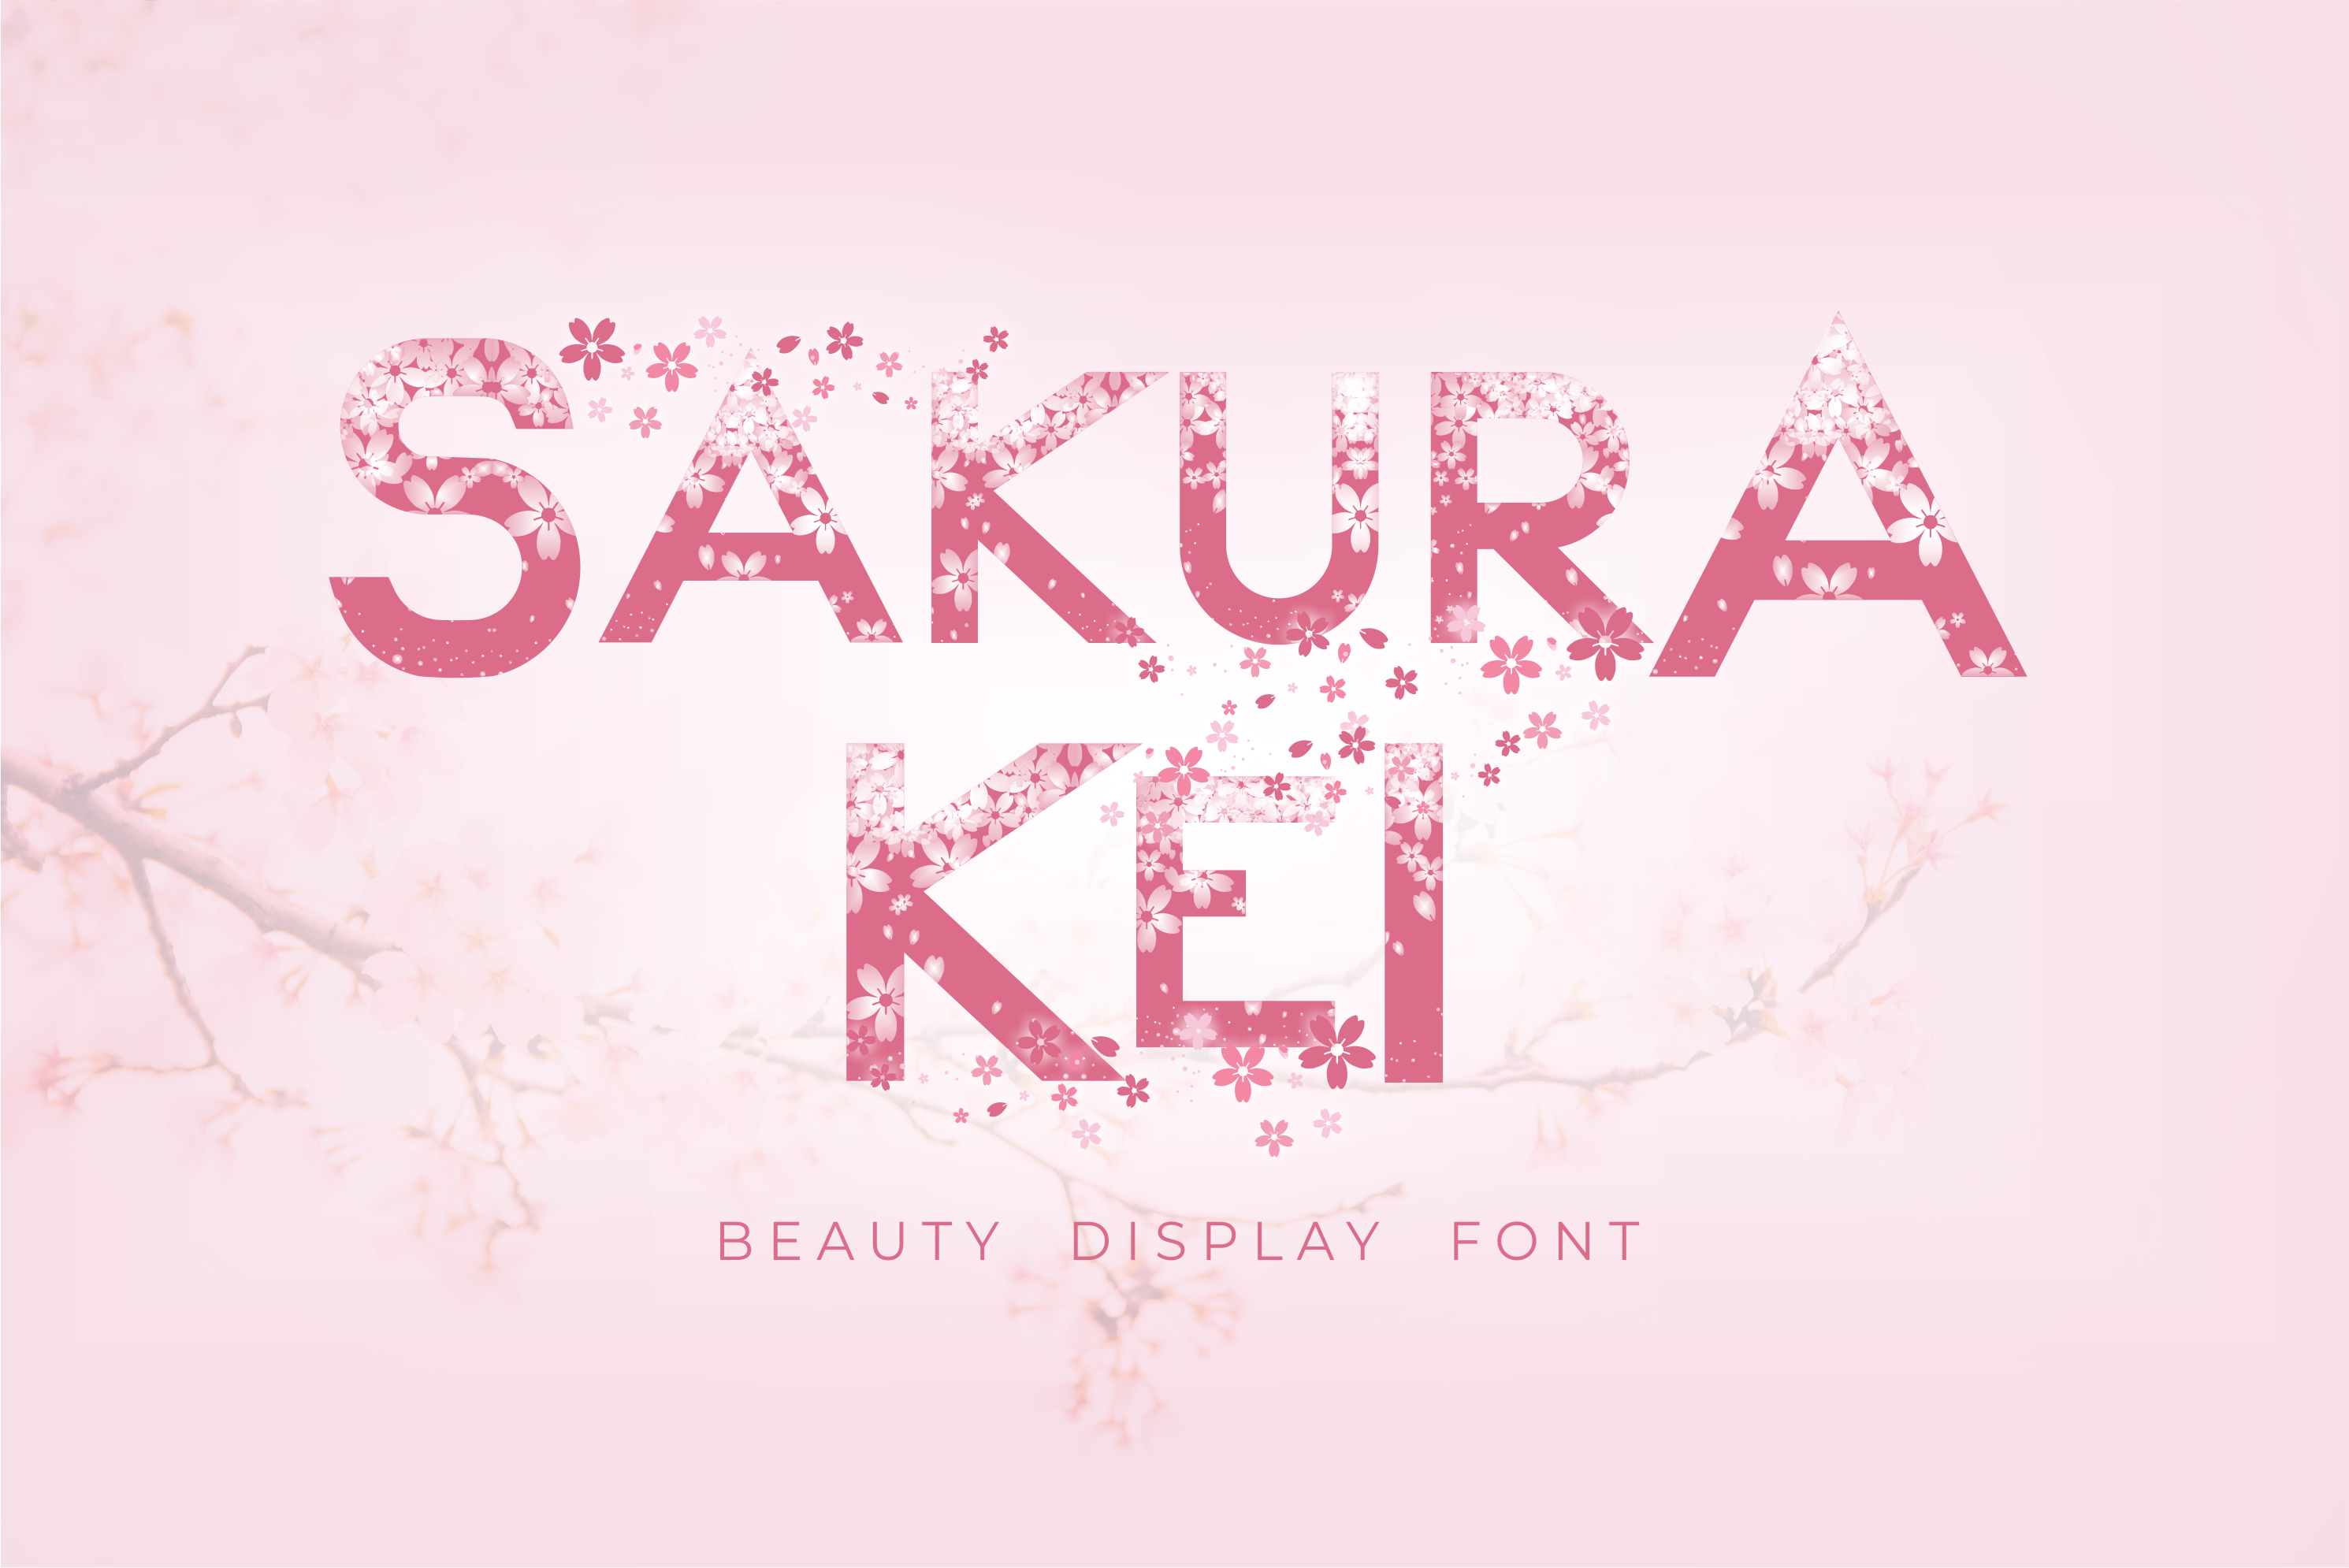 Sakura Kei